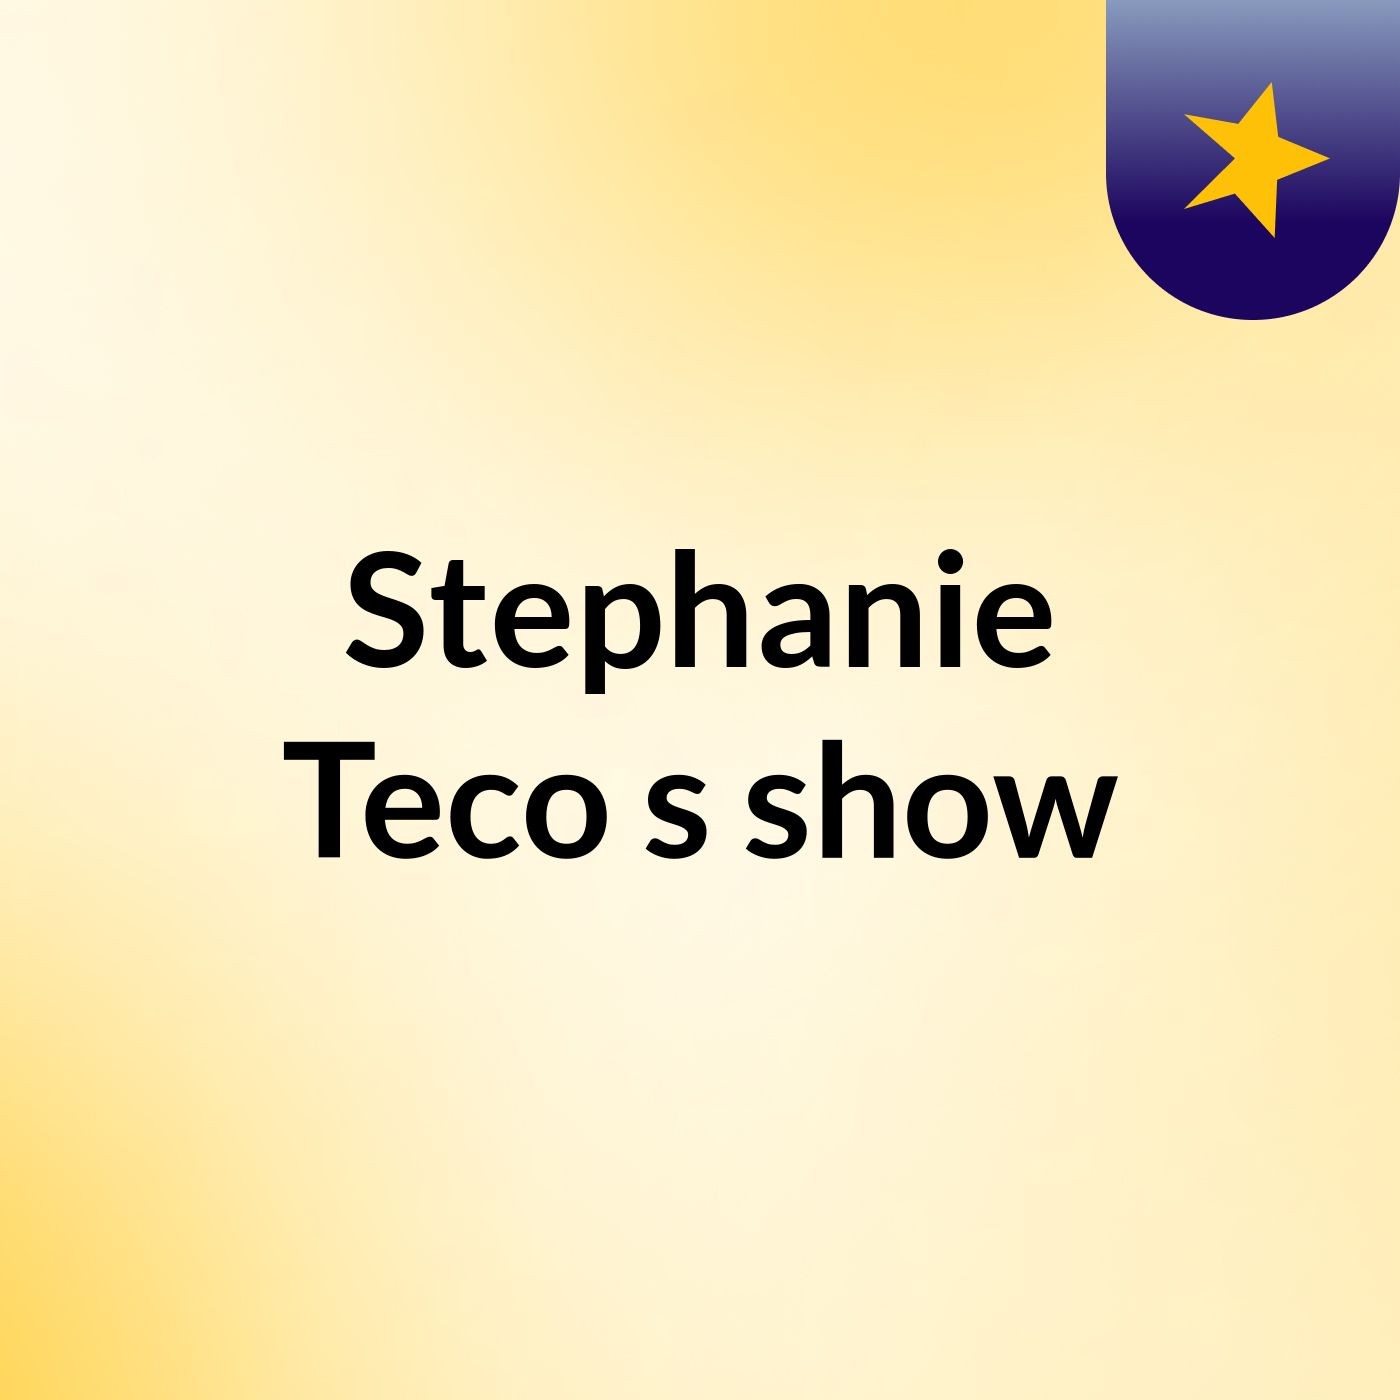 Stephanie Teco's show